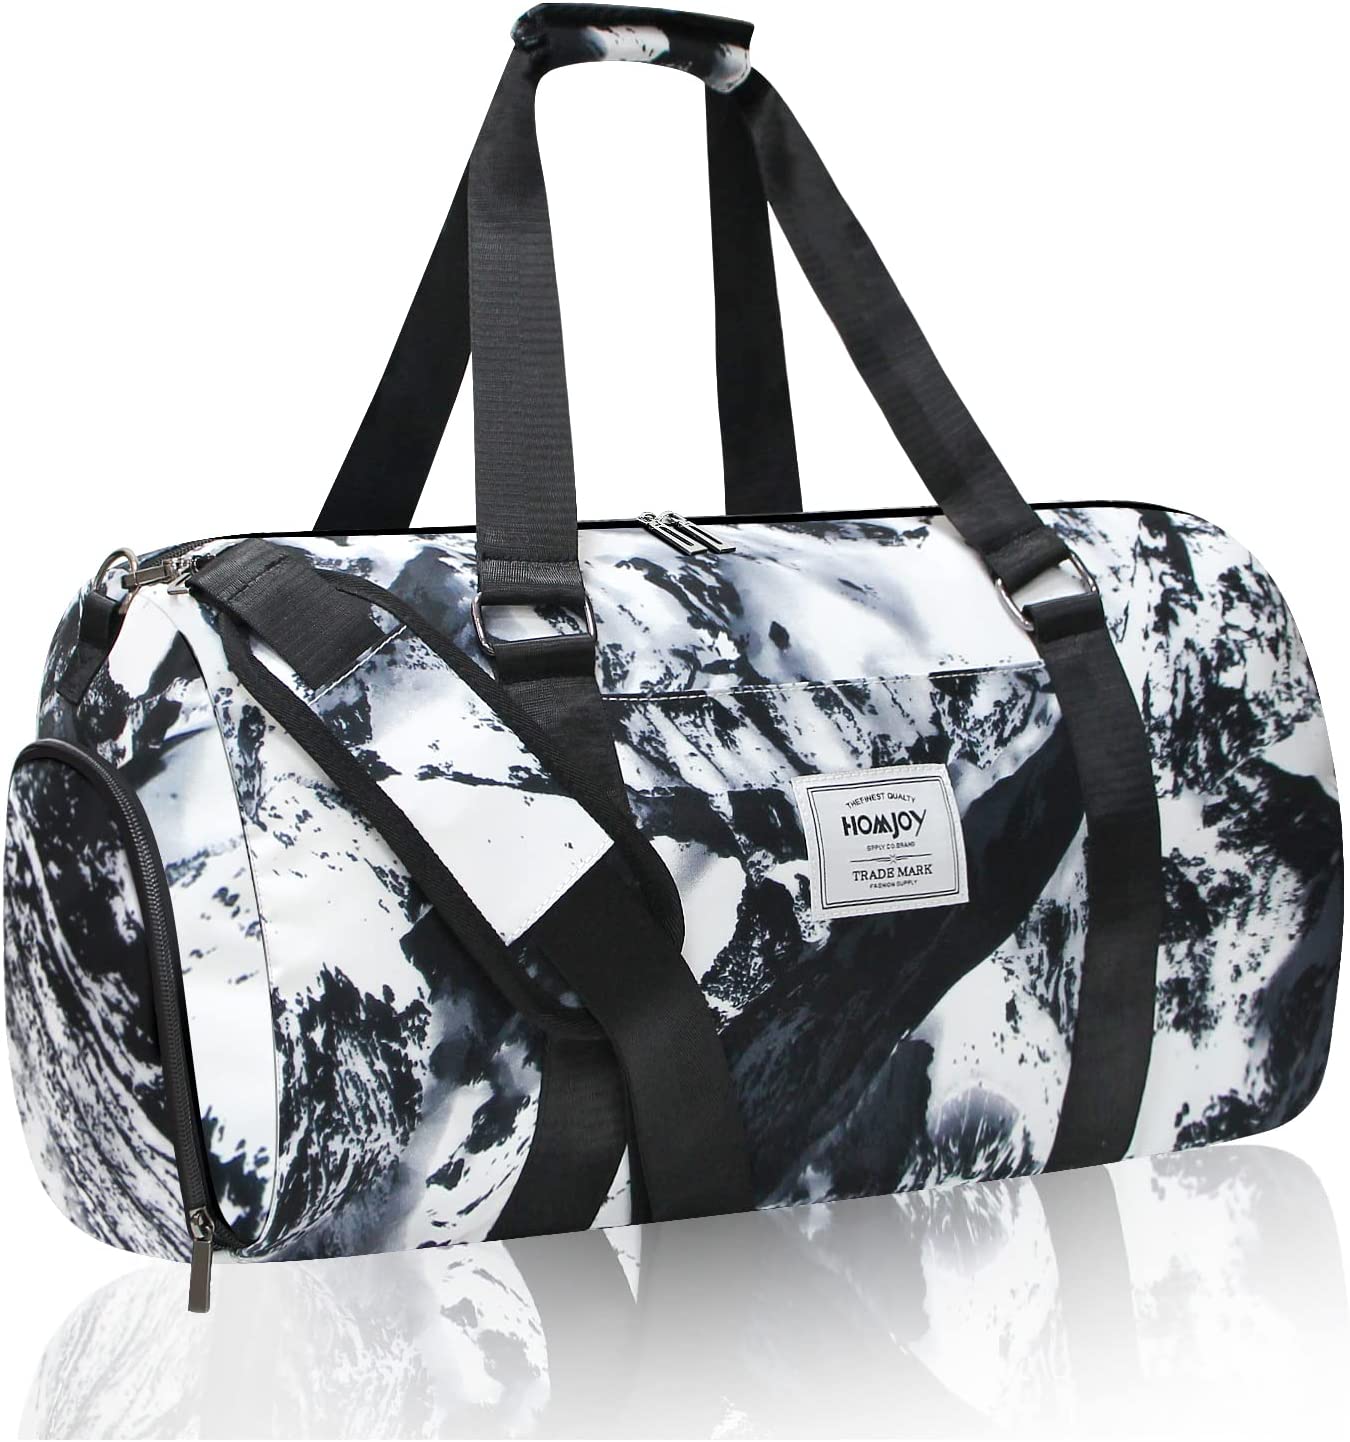 Large Duffel/Shoulder with Shoe Pocket Weekender Bag,Travel Duffel Bag,Sports Tote Gym Bag